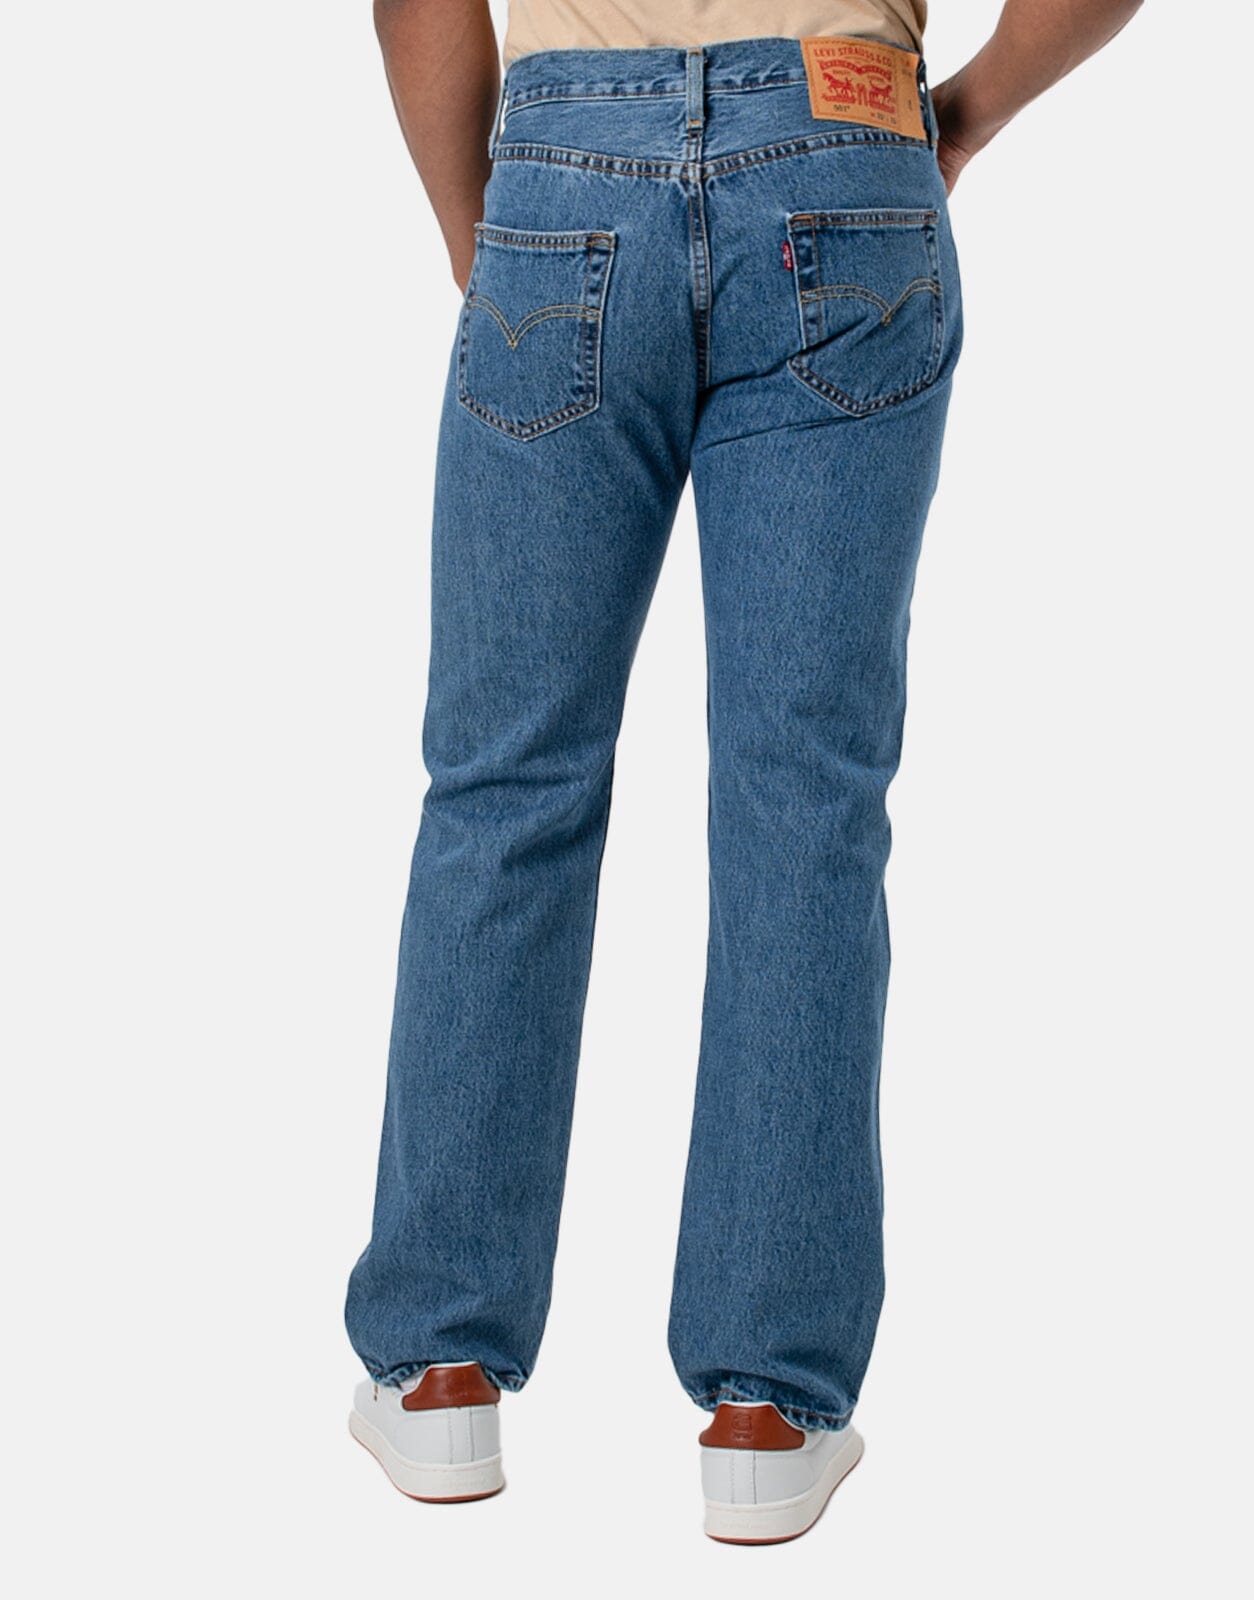 Levi's 501 Original Medium Stonewash Jeans - Subwear